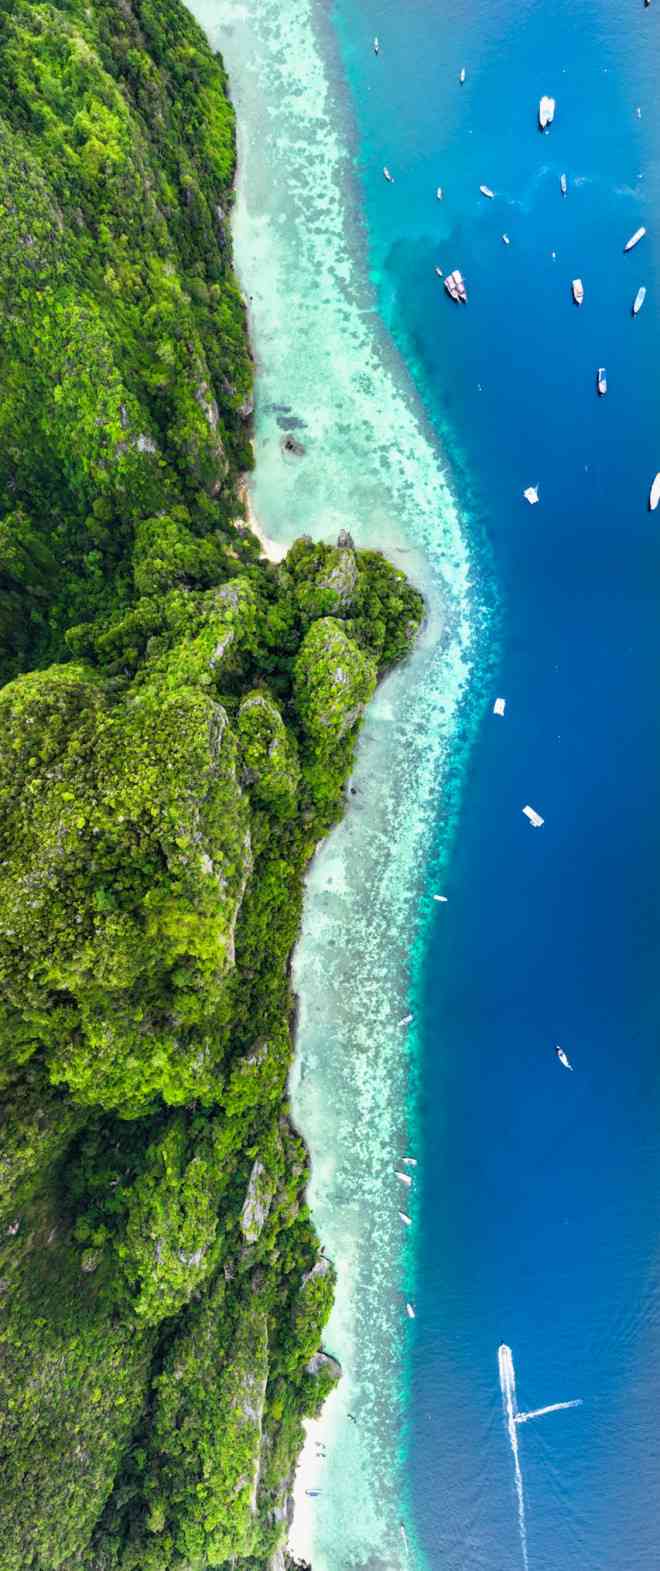 Thăm vịnh Maya sau 3 năm đóng cửa, ảnh lên màu cực đẹp không cần sửa - 7